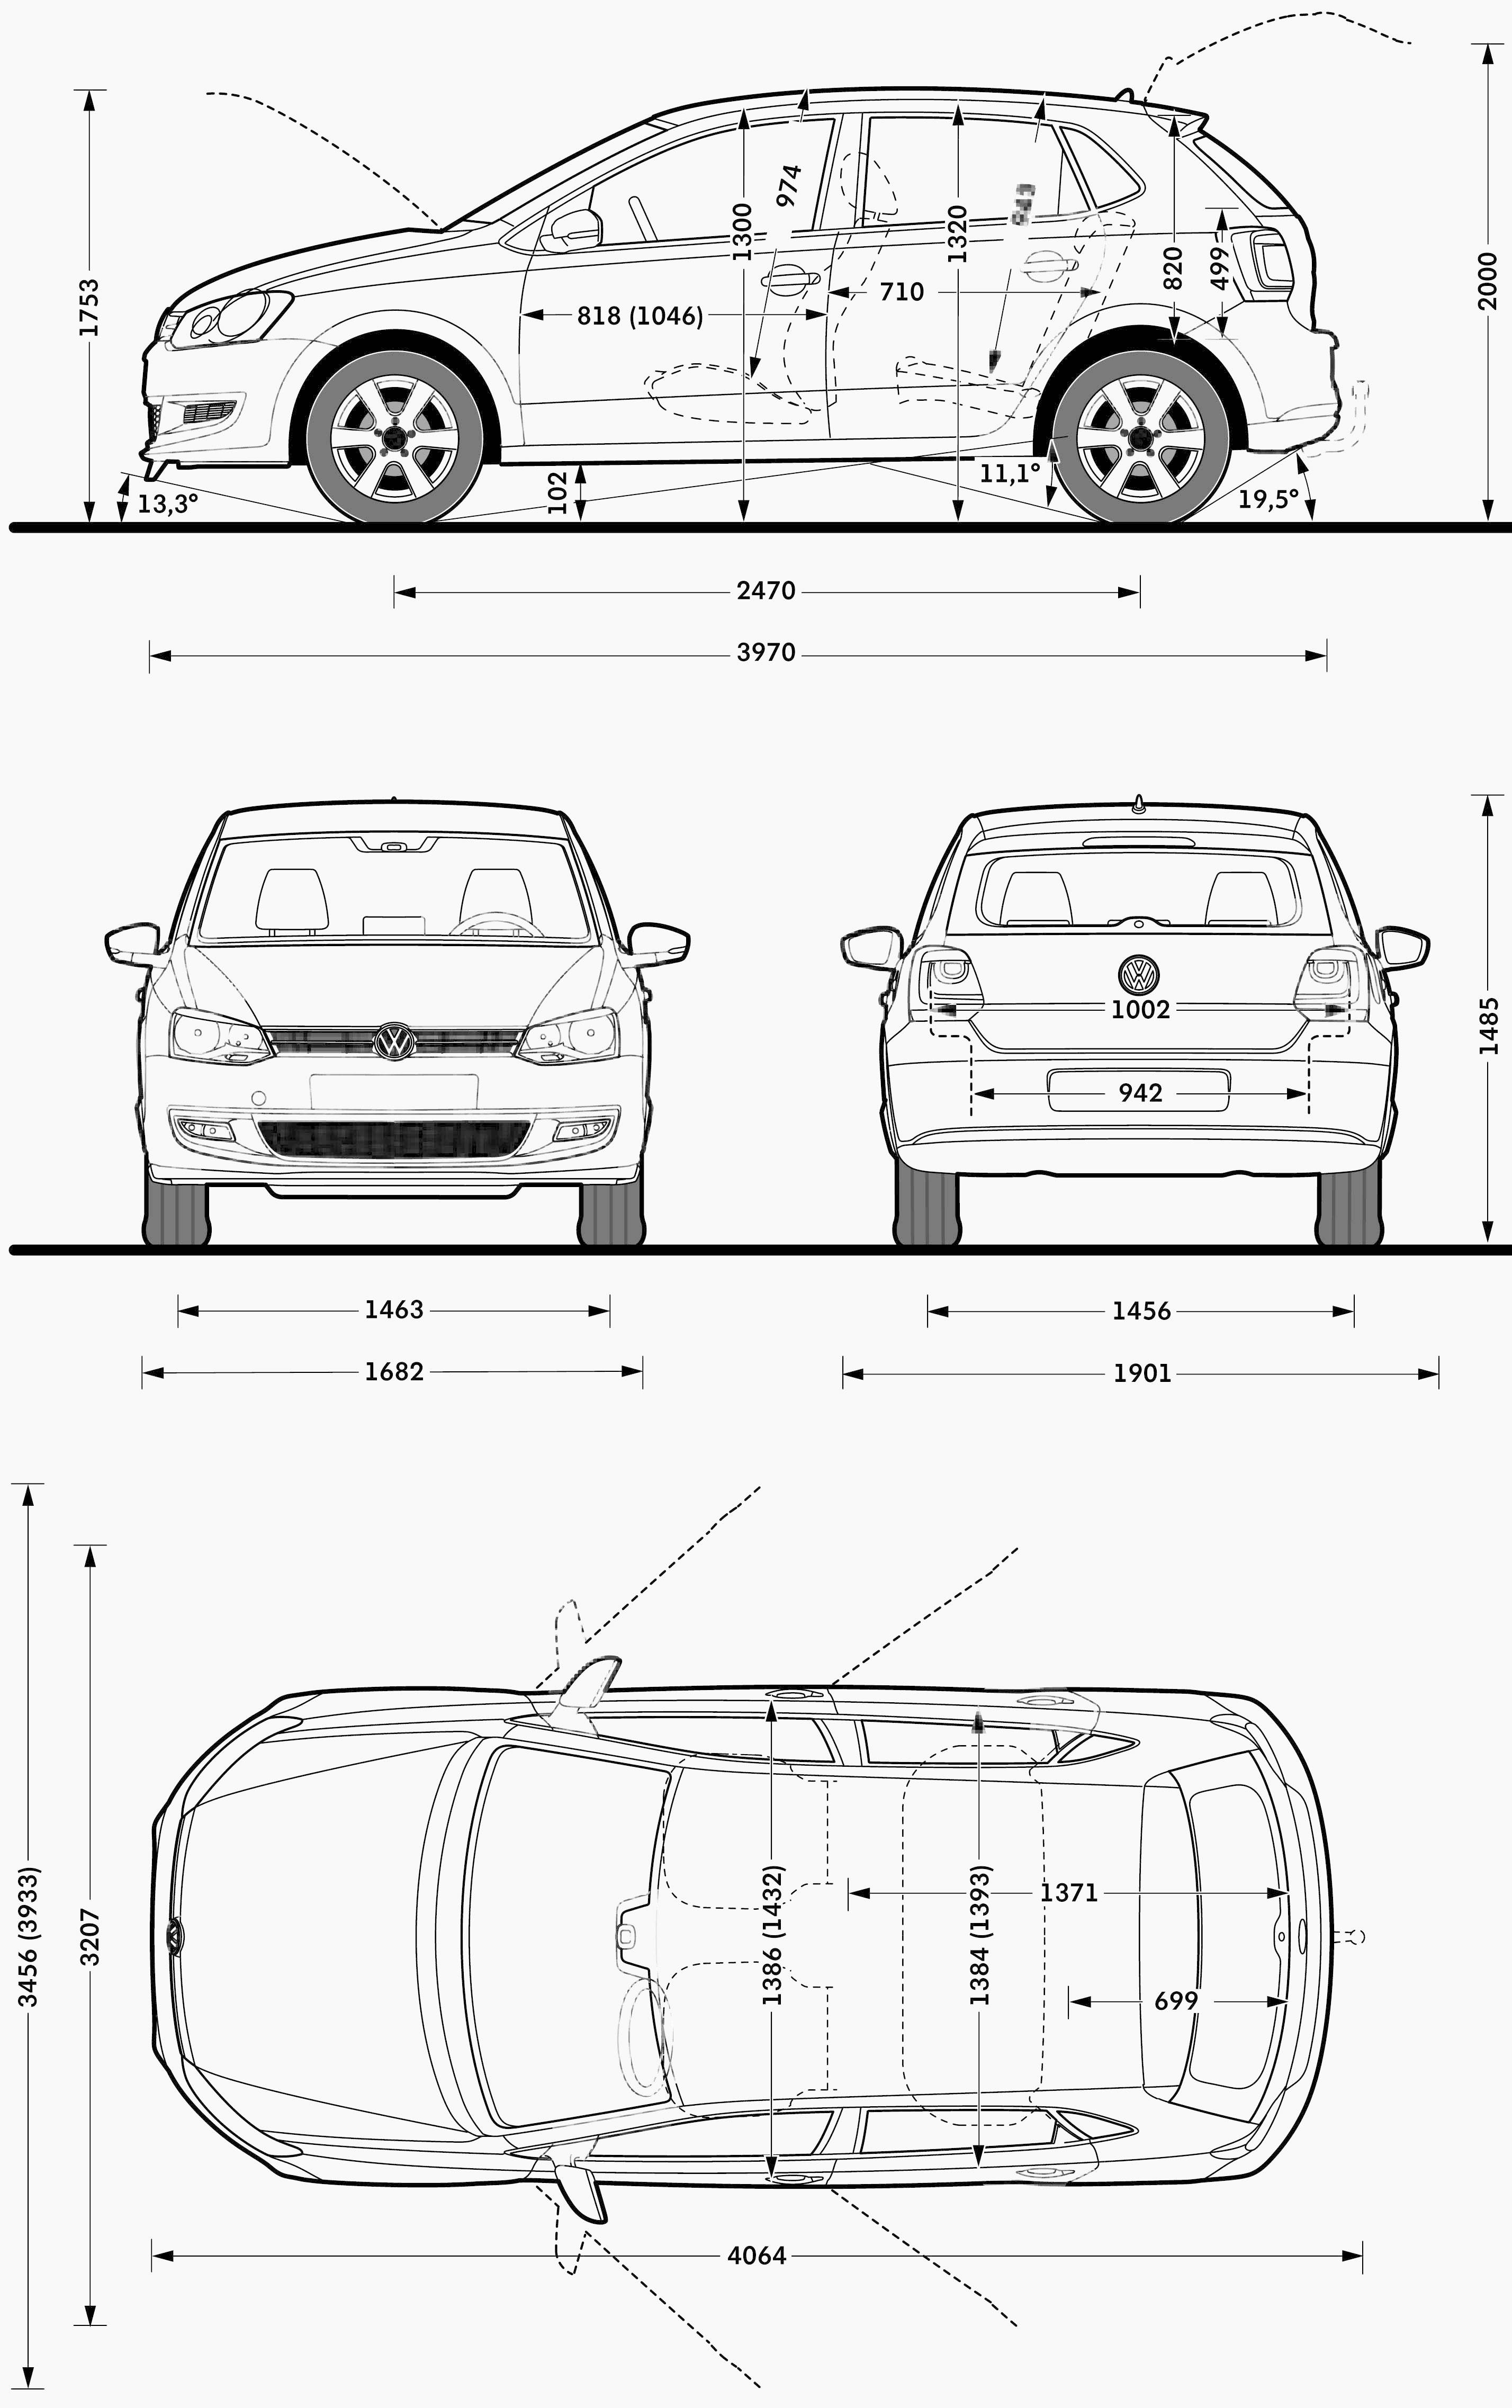 Volkswagen Polo blueprint